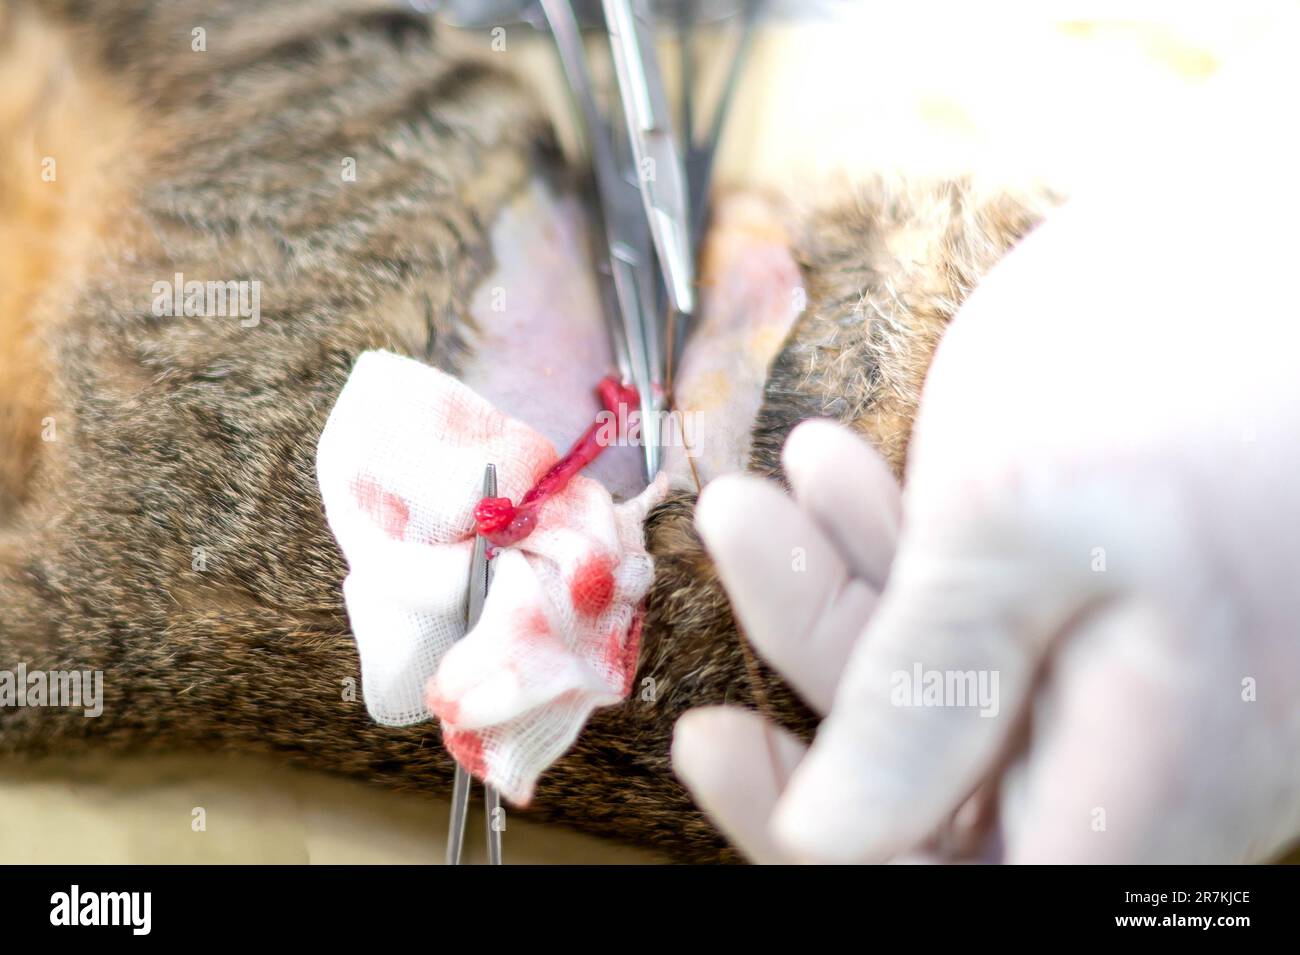 Mani del veterinario con guanti che tengono e tagliano i testicoli di gatto. Foto Stock